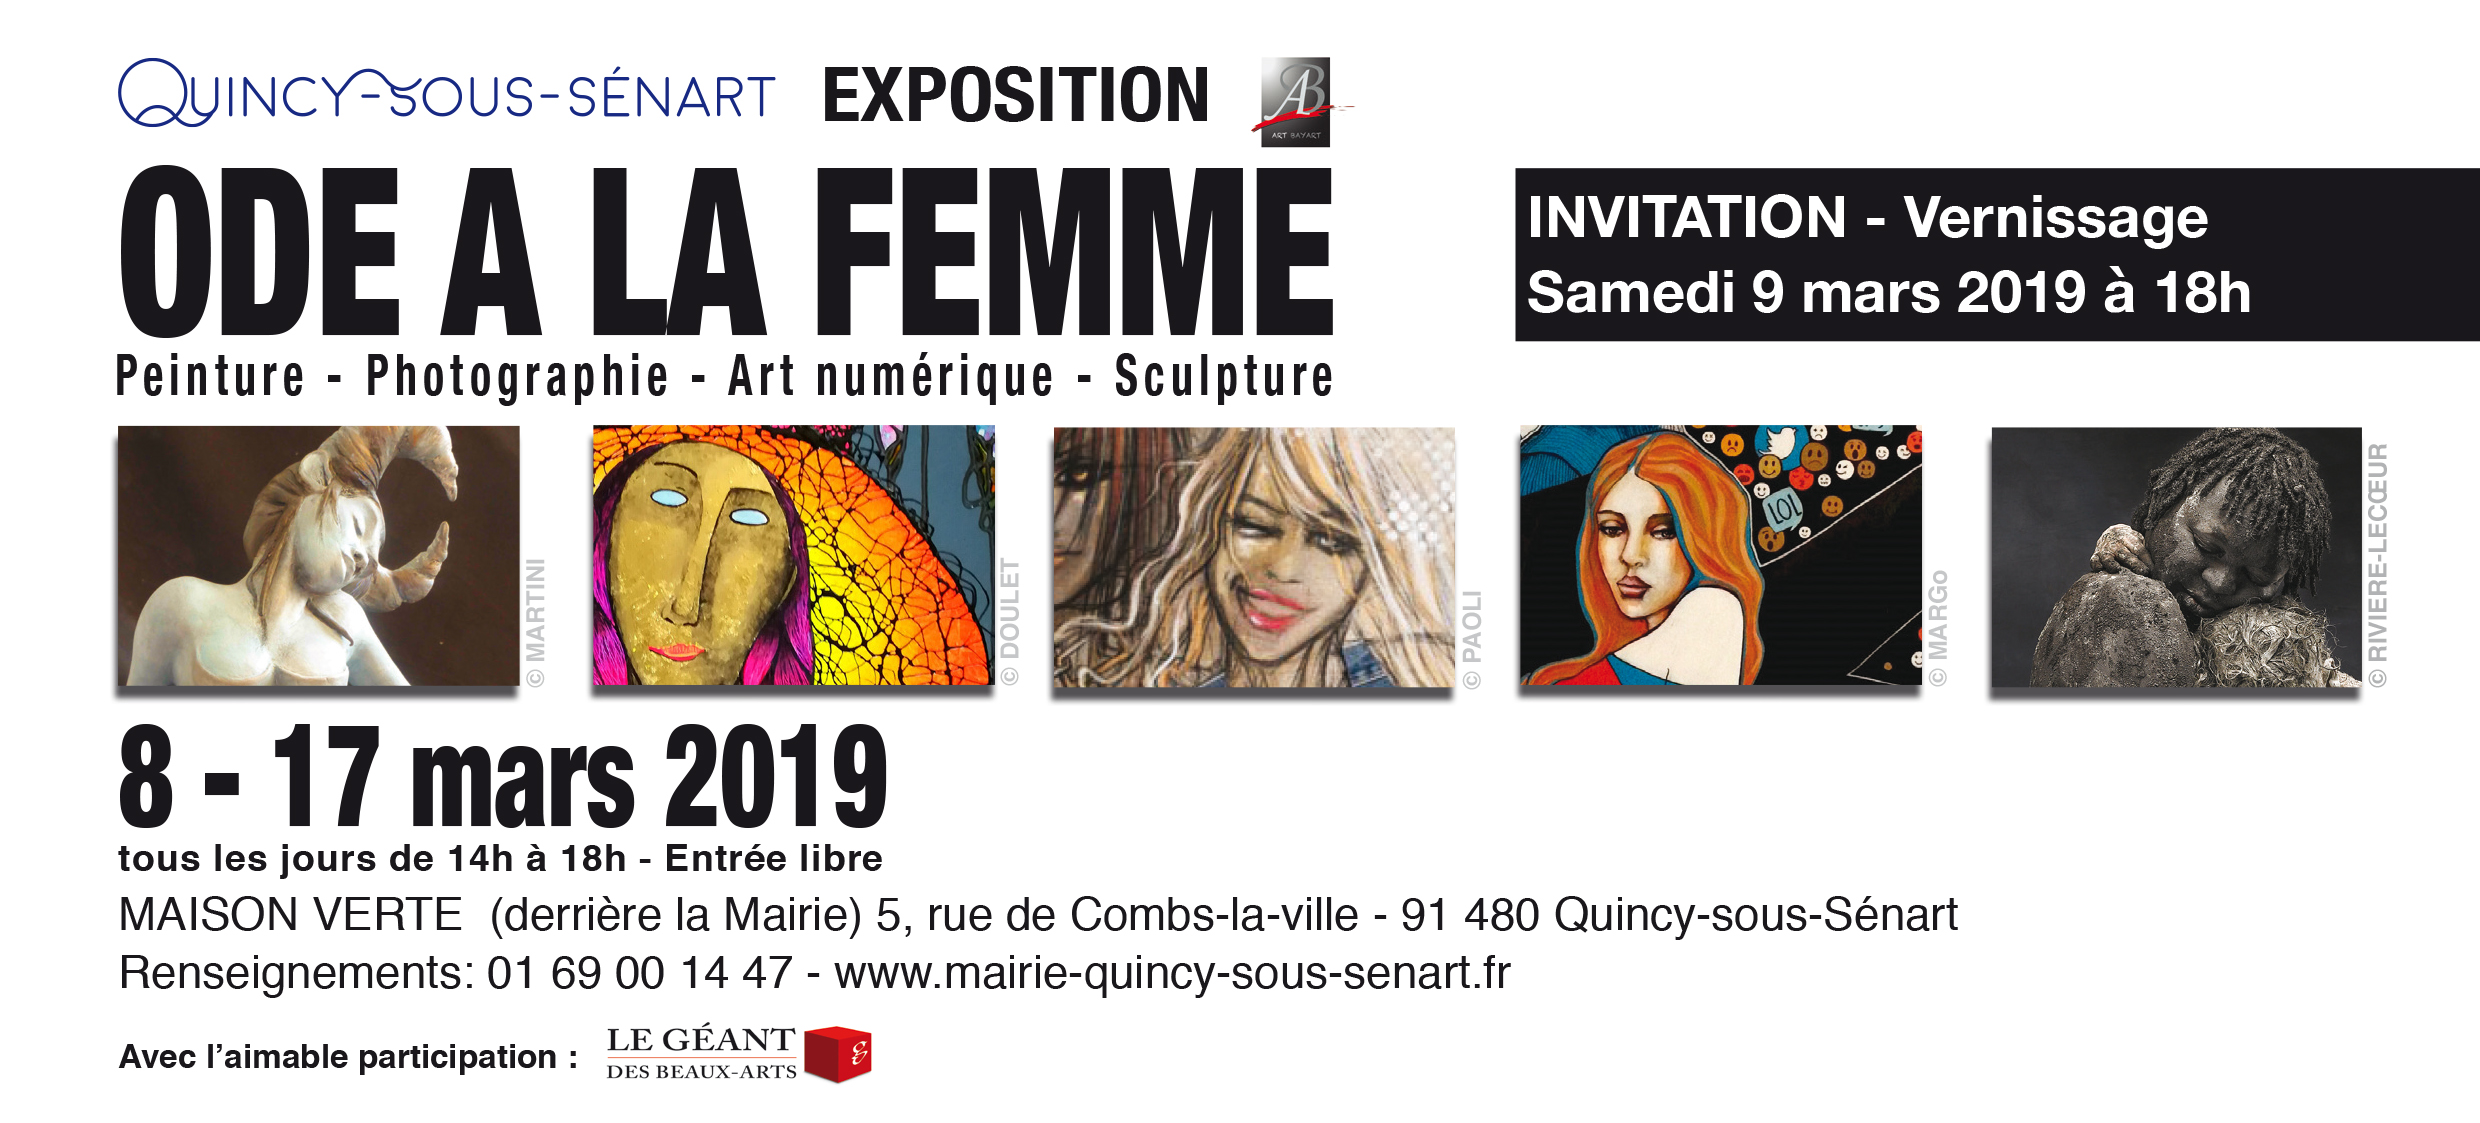 Vernissage de l'exposition "Ode à la femme" le 9 mars à 18h